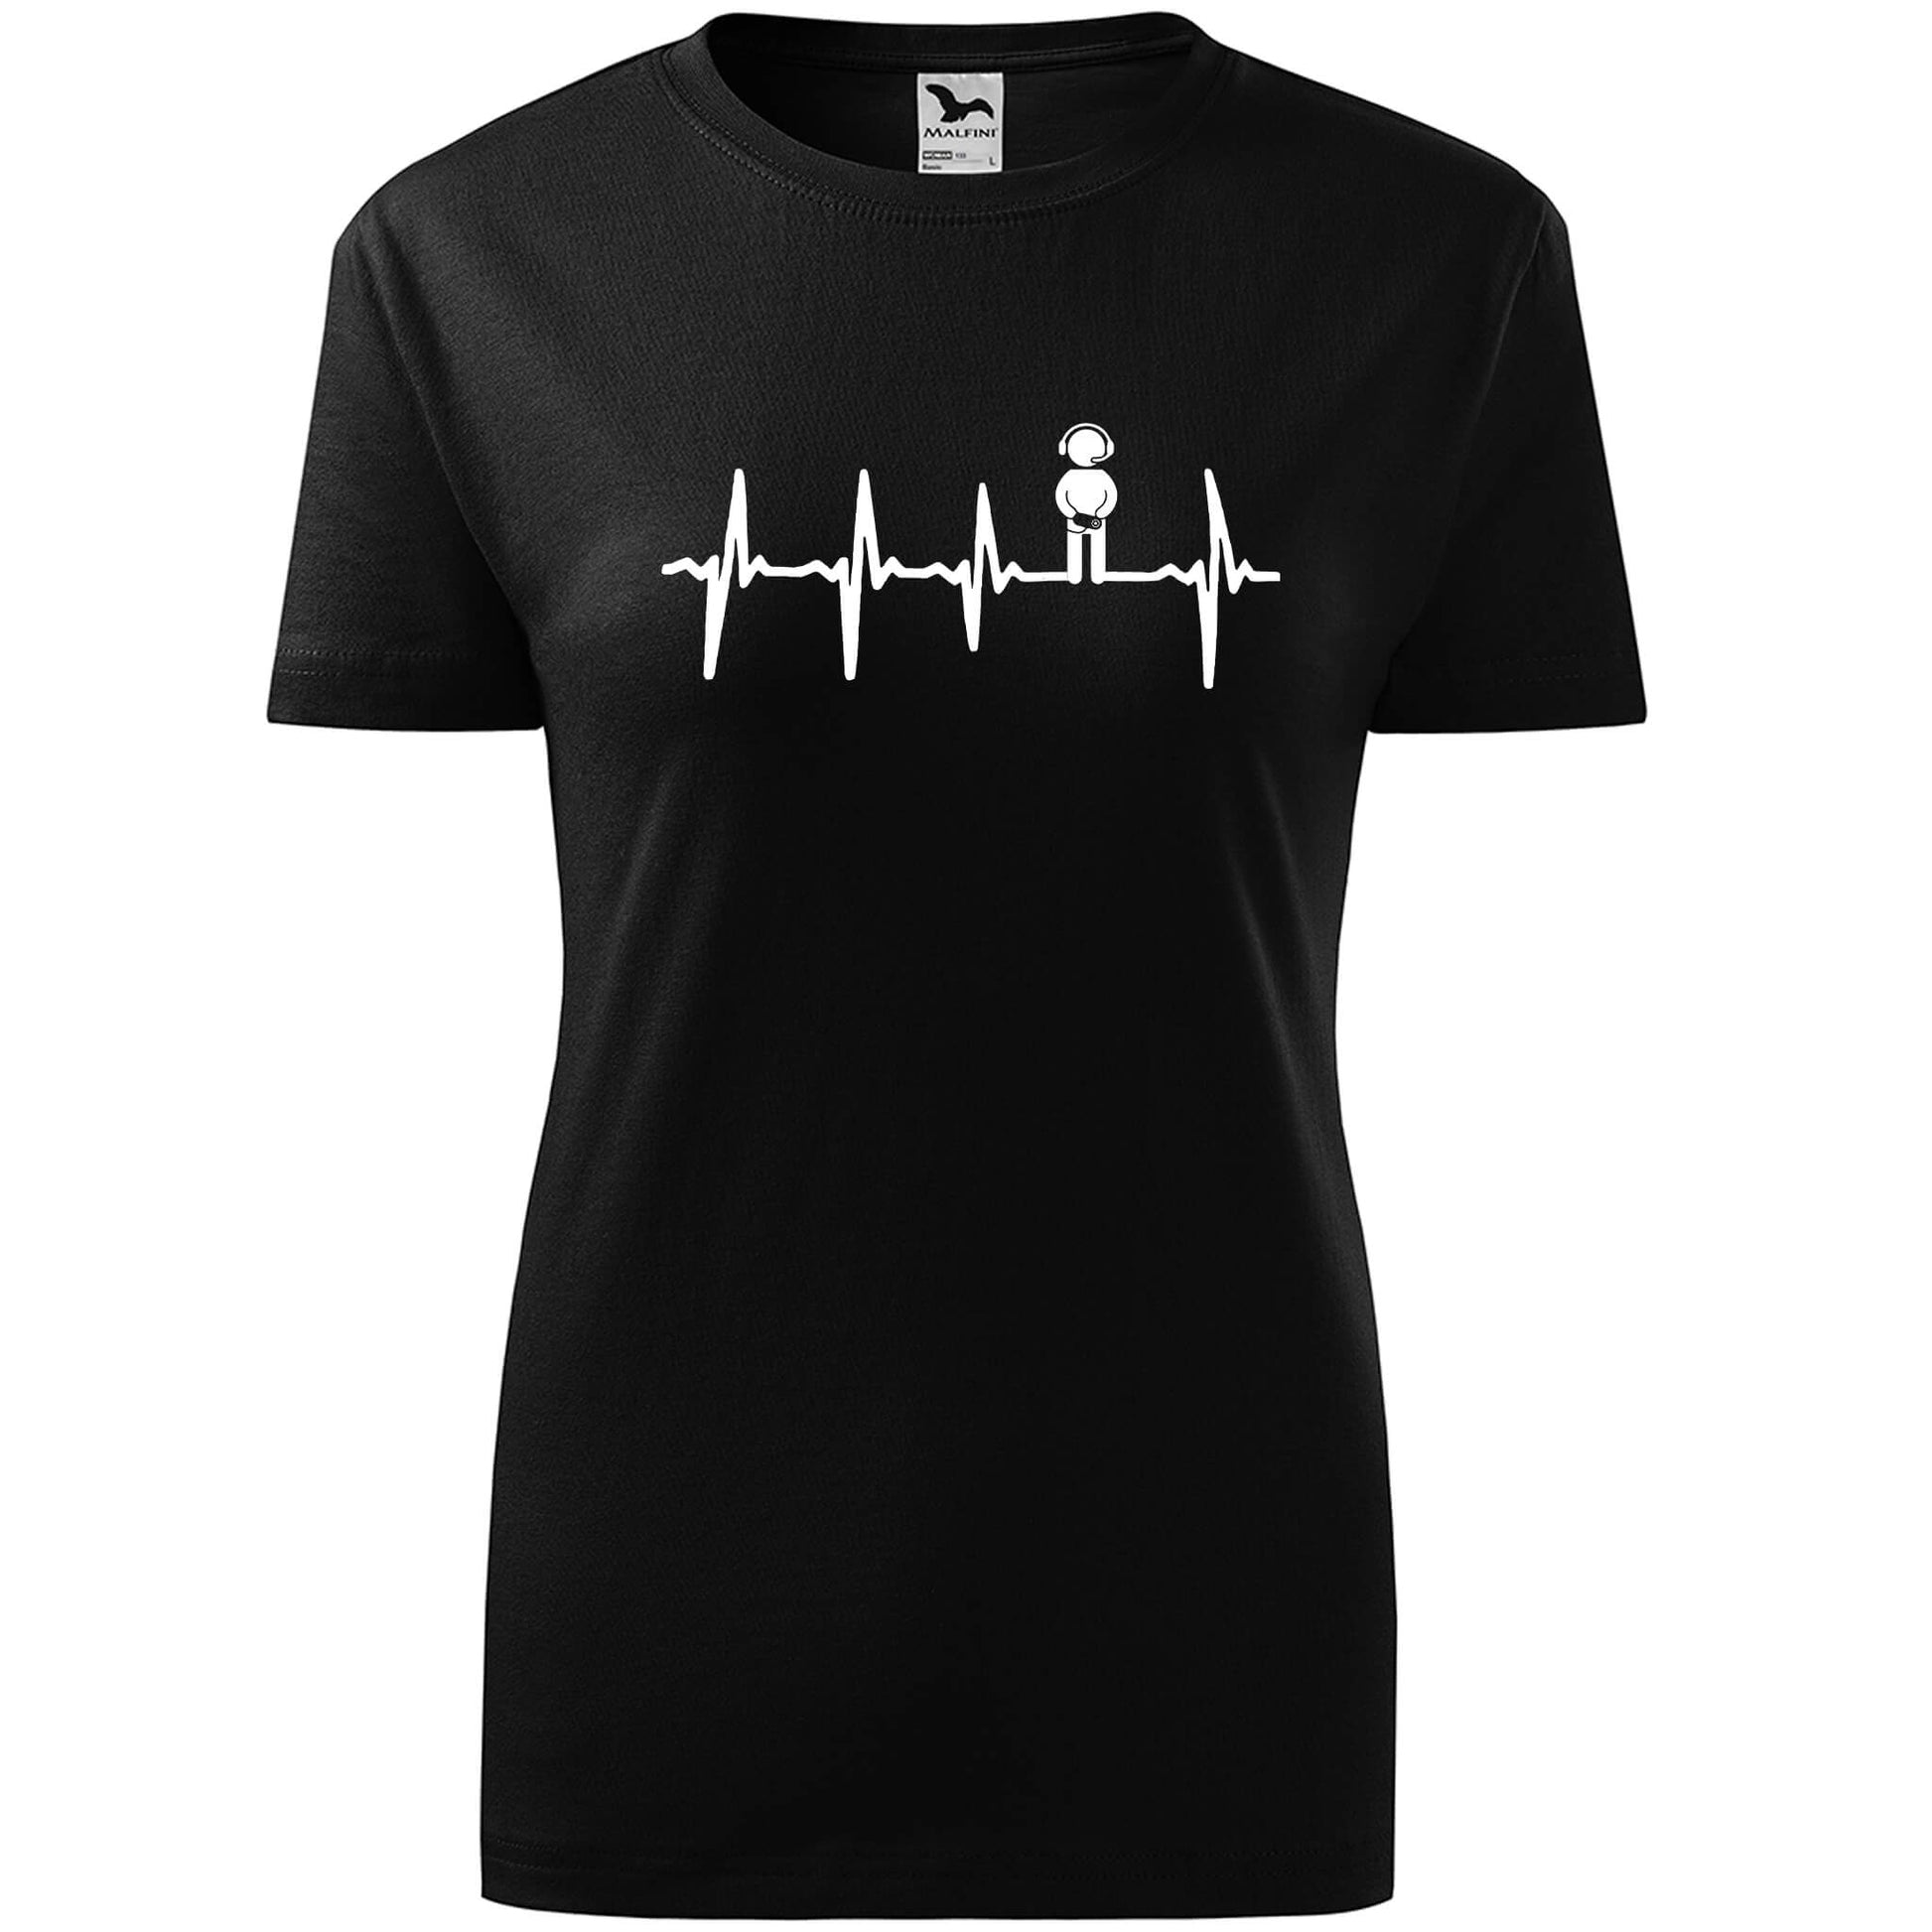 T-shirt - EKG - Gamer - rvdesignprint